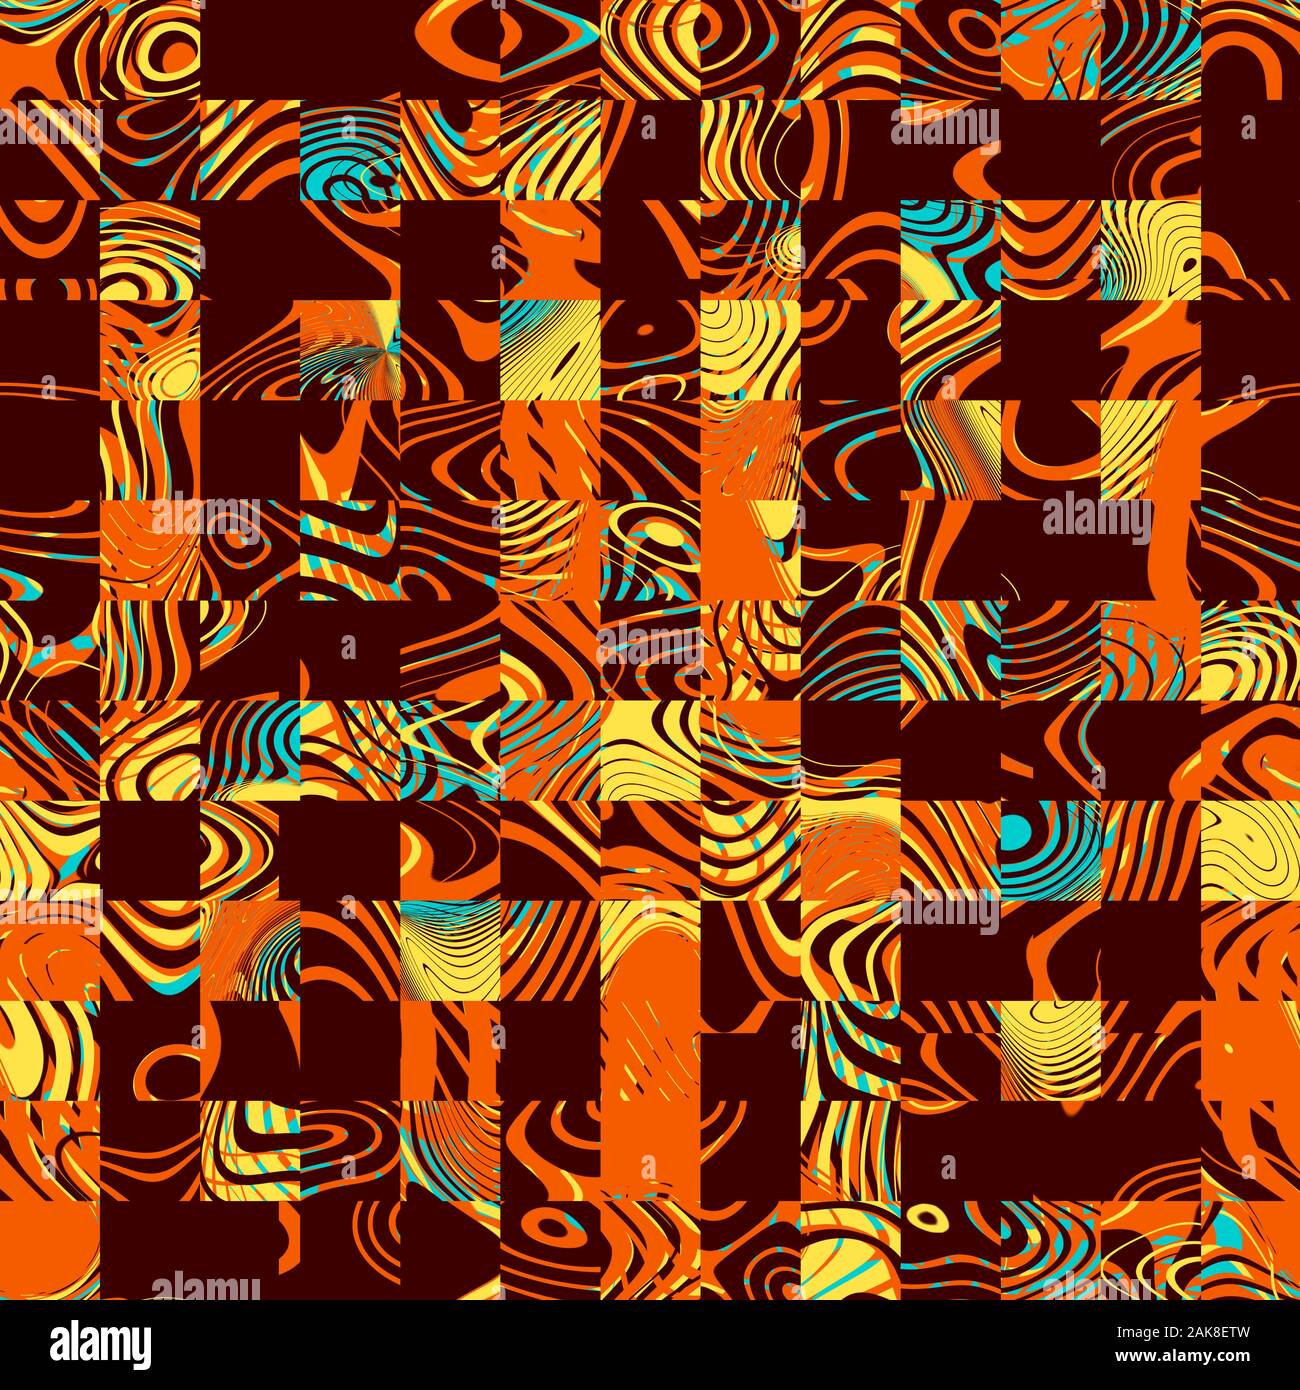 Ensemble de formes géométriques abstraites pour la plupart dans des tons orange et jaunes. Moyenne géométrique art numérique. Banque D'Images